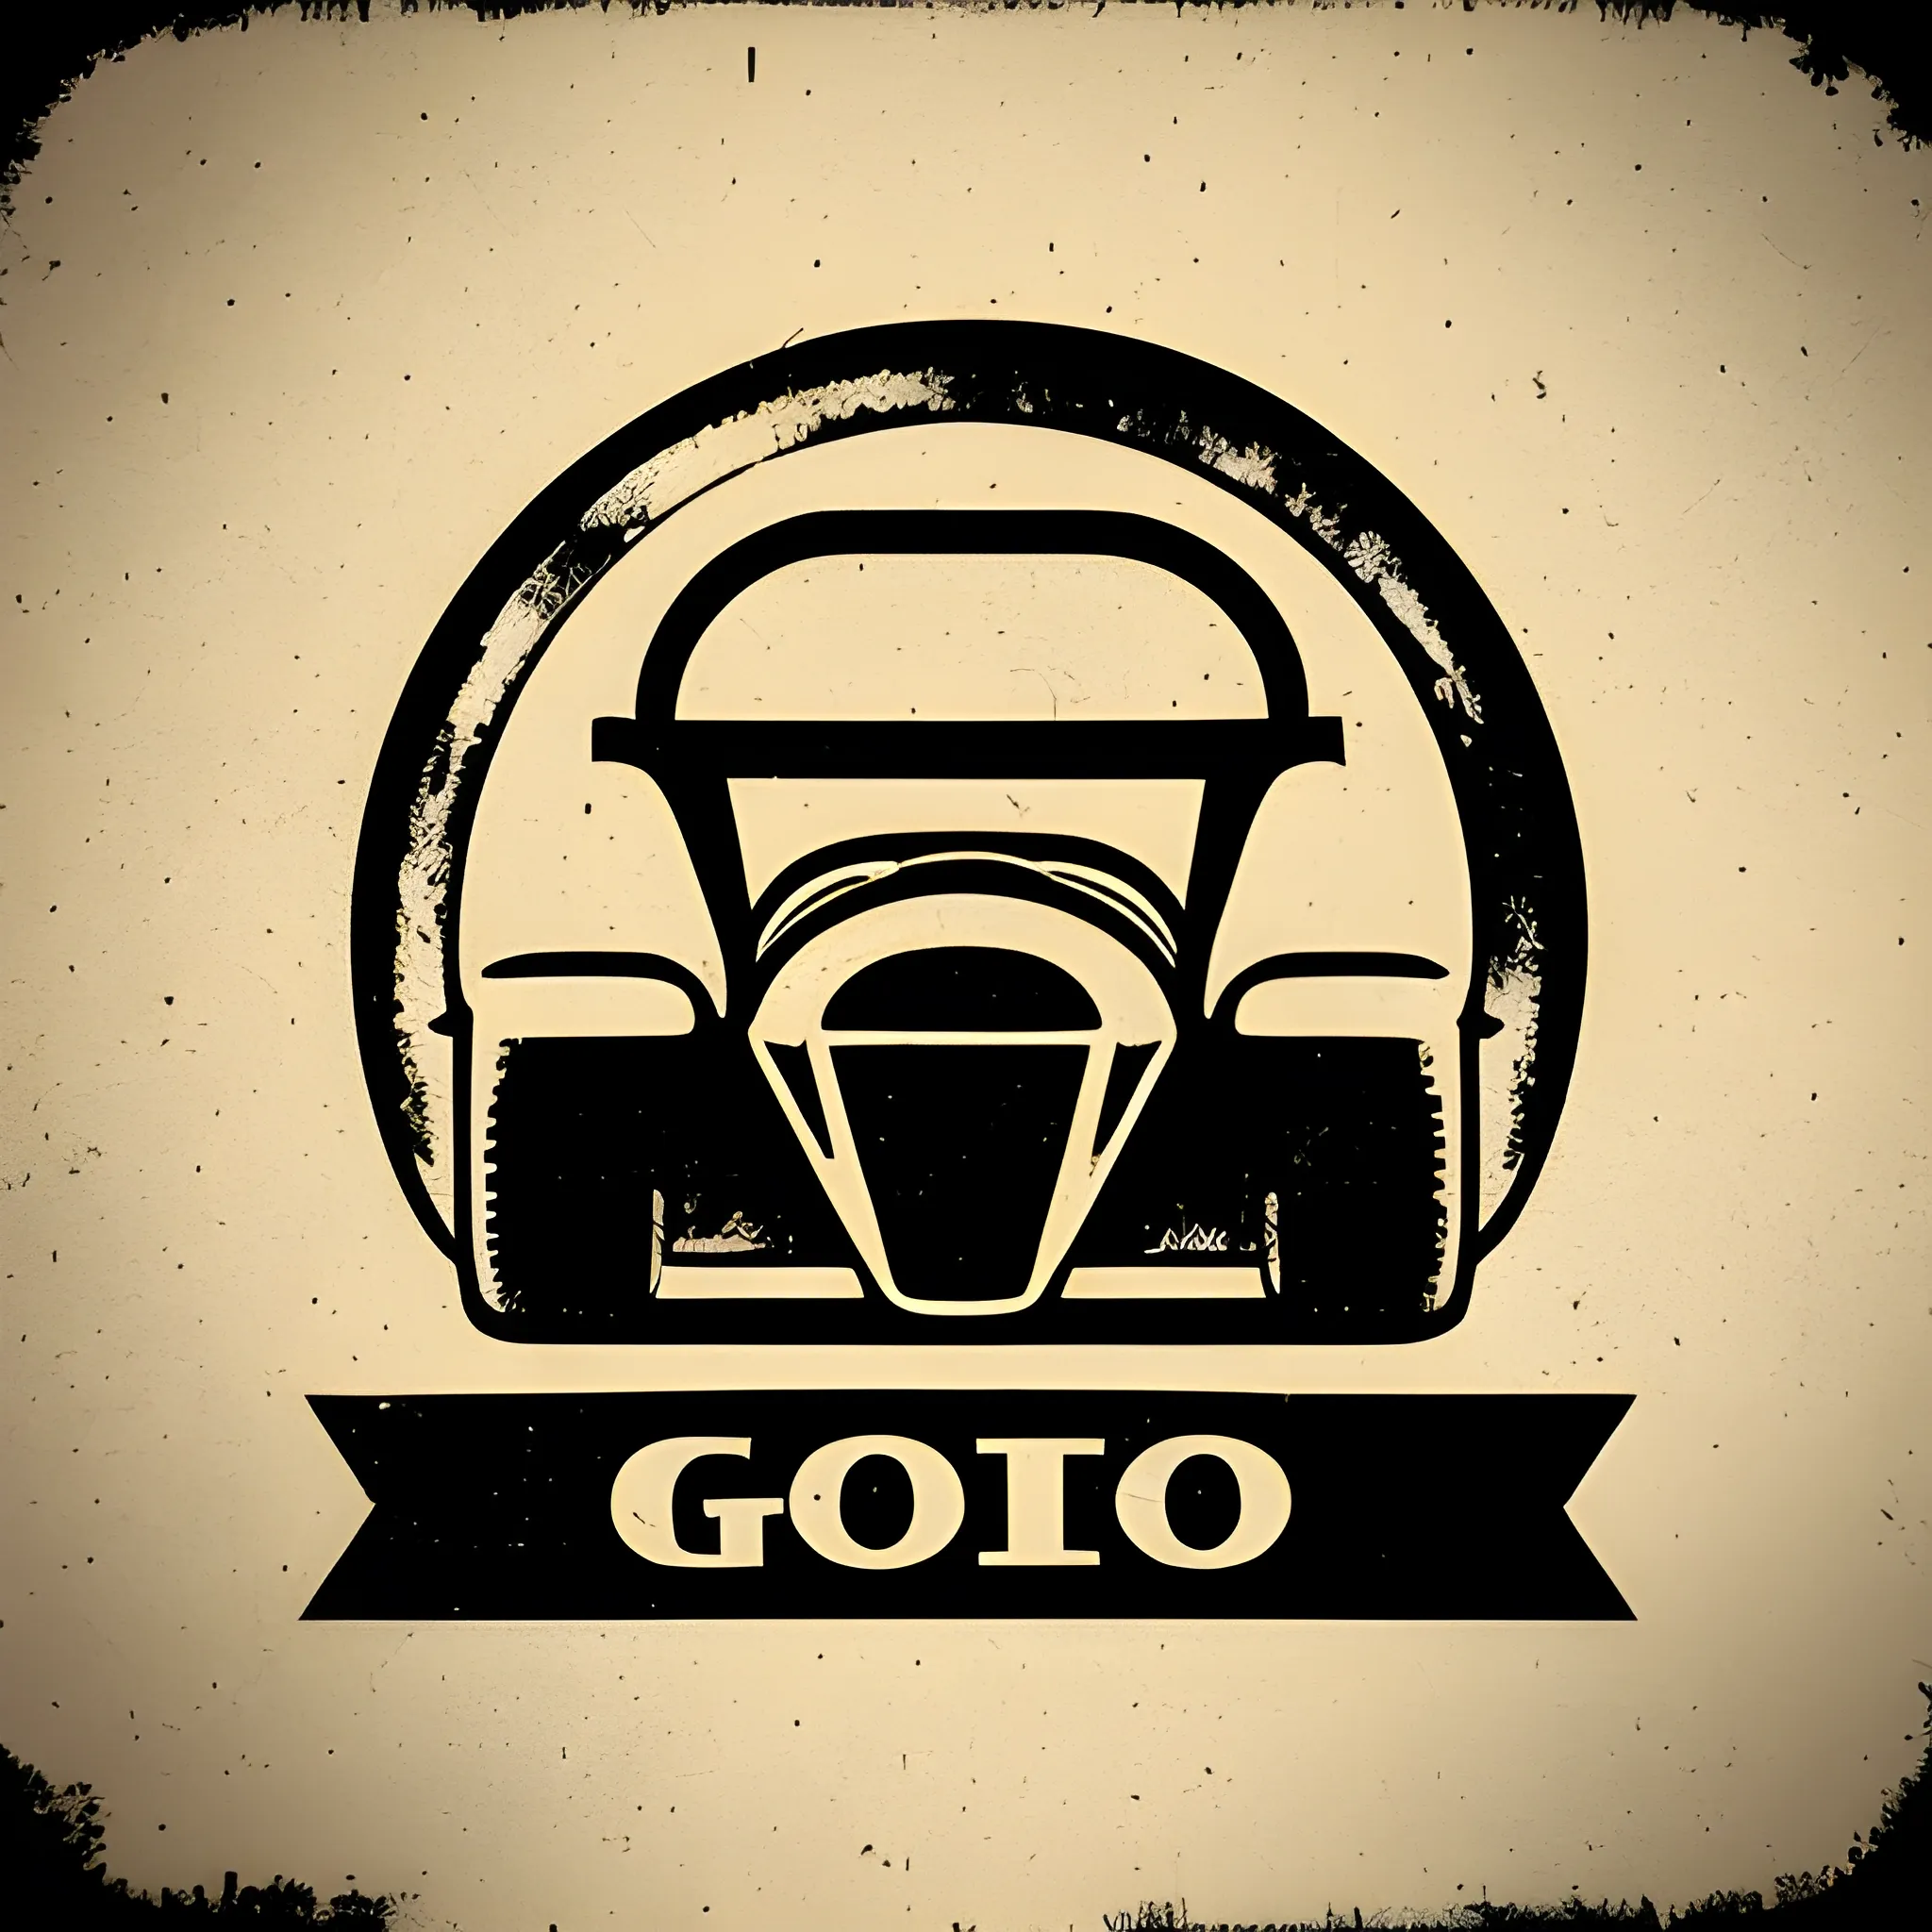 Vintage go kart logo